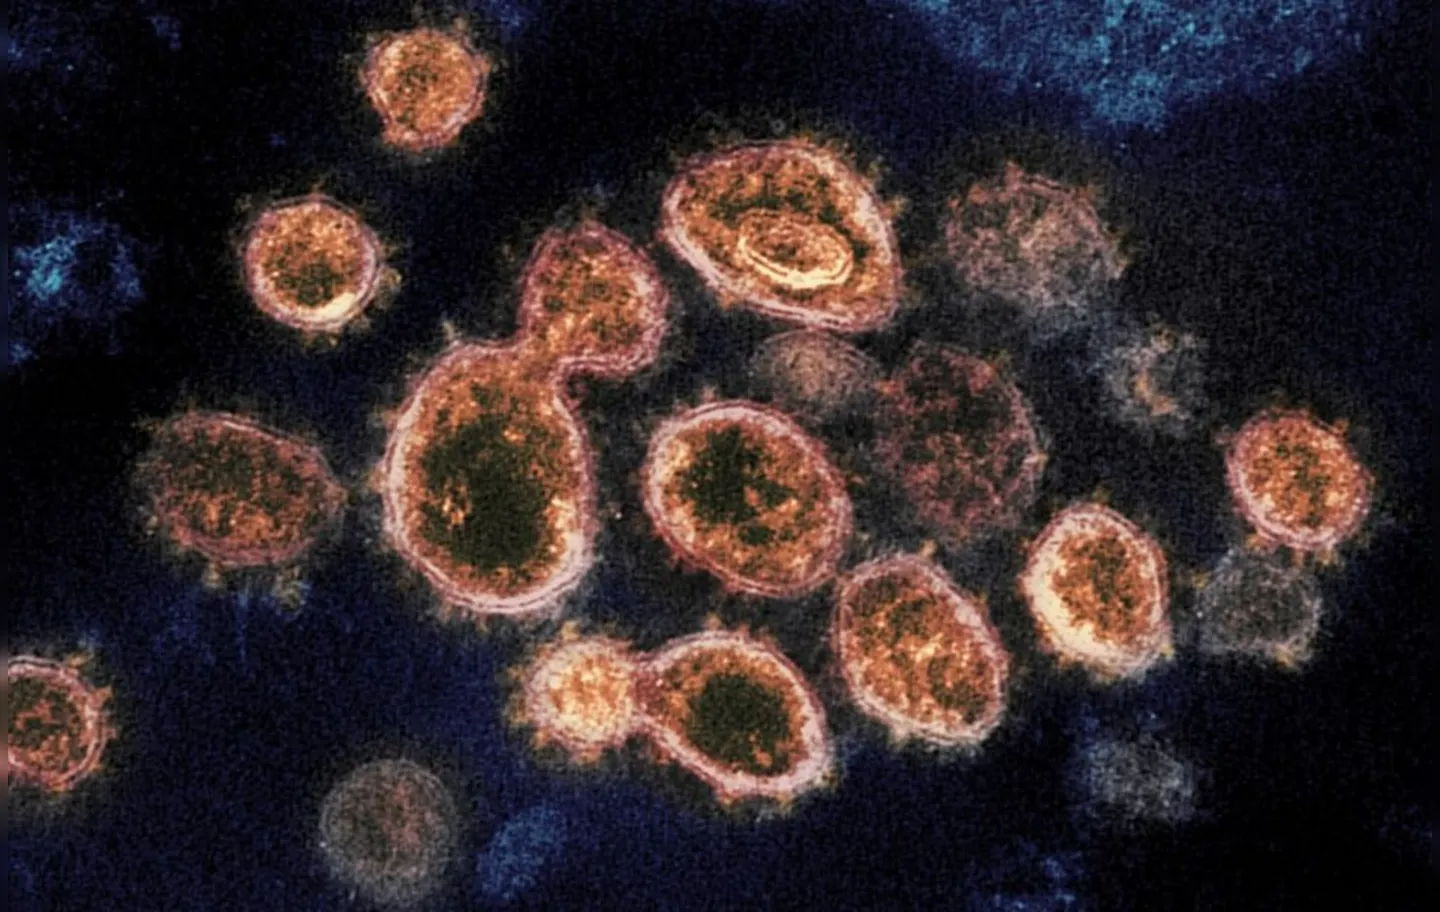 Imagens de microscópio mostram partículas do coronavírus que causam a Covid-19 retiradas de um paciente nos EUA